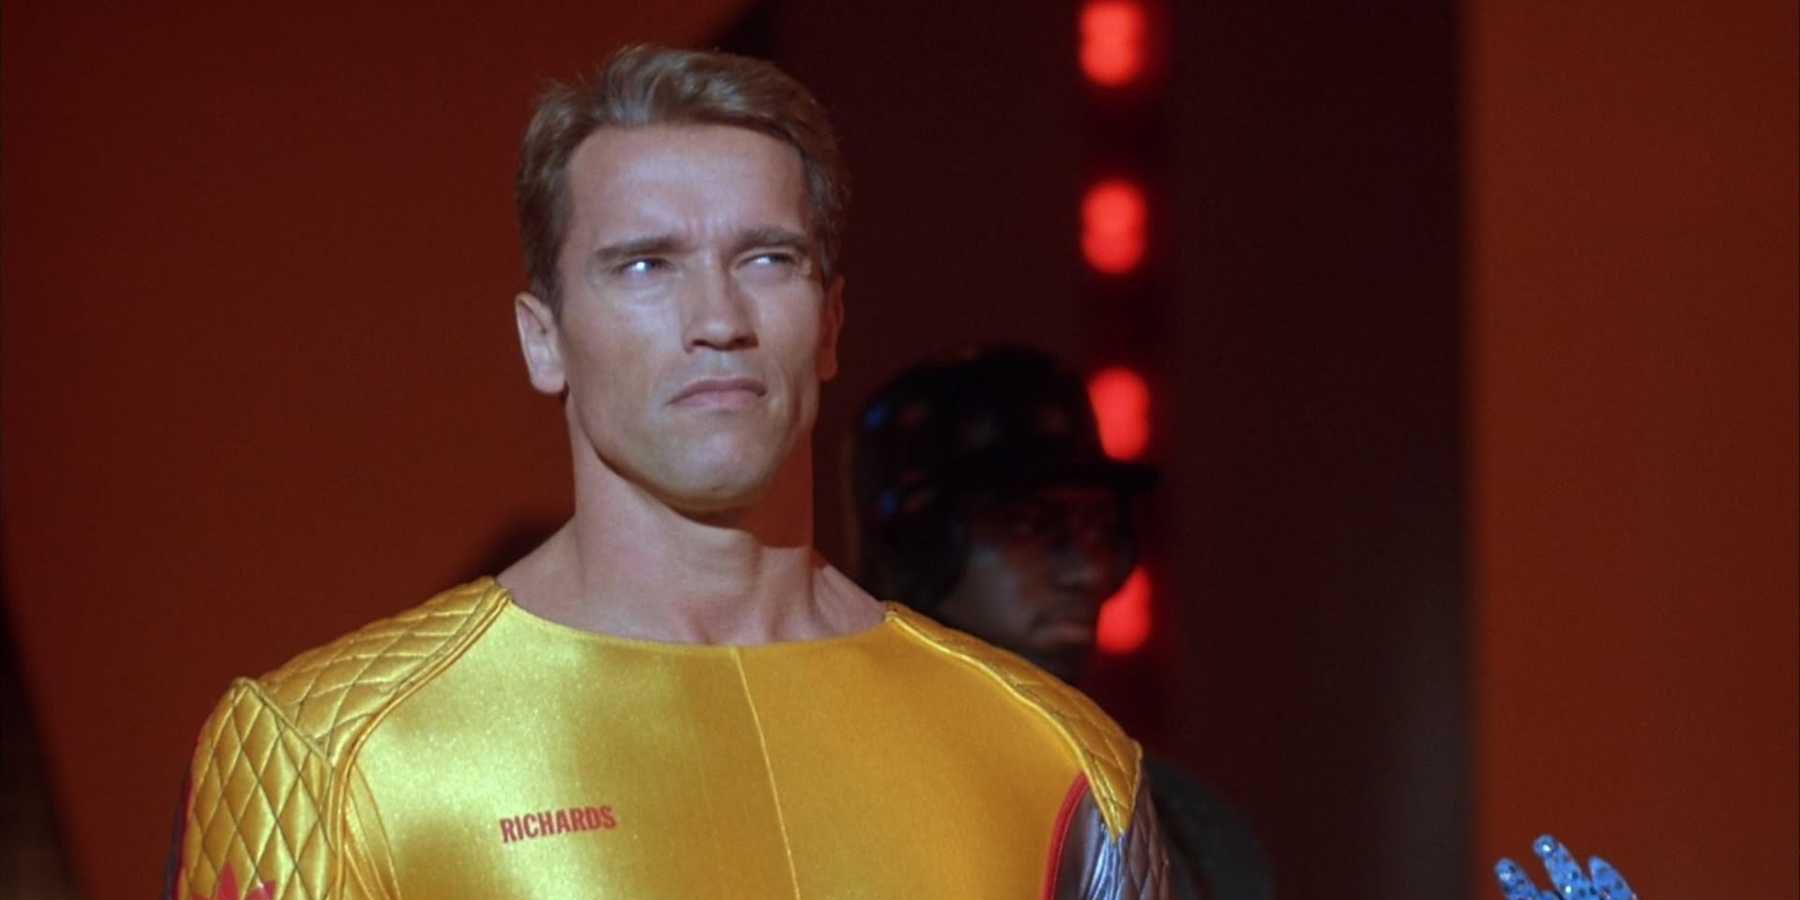 The Running Man: Arnold Schwarzenegger as Ben Richards.